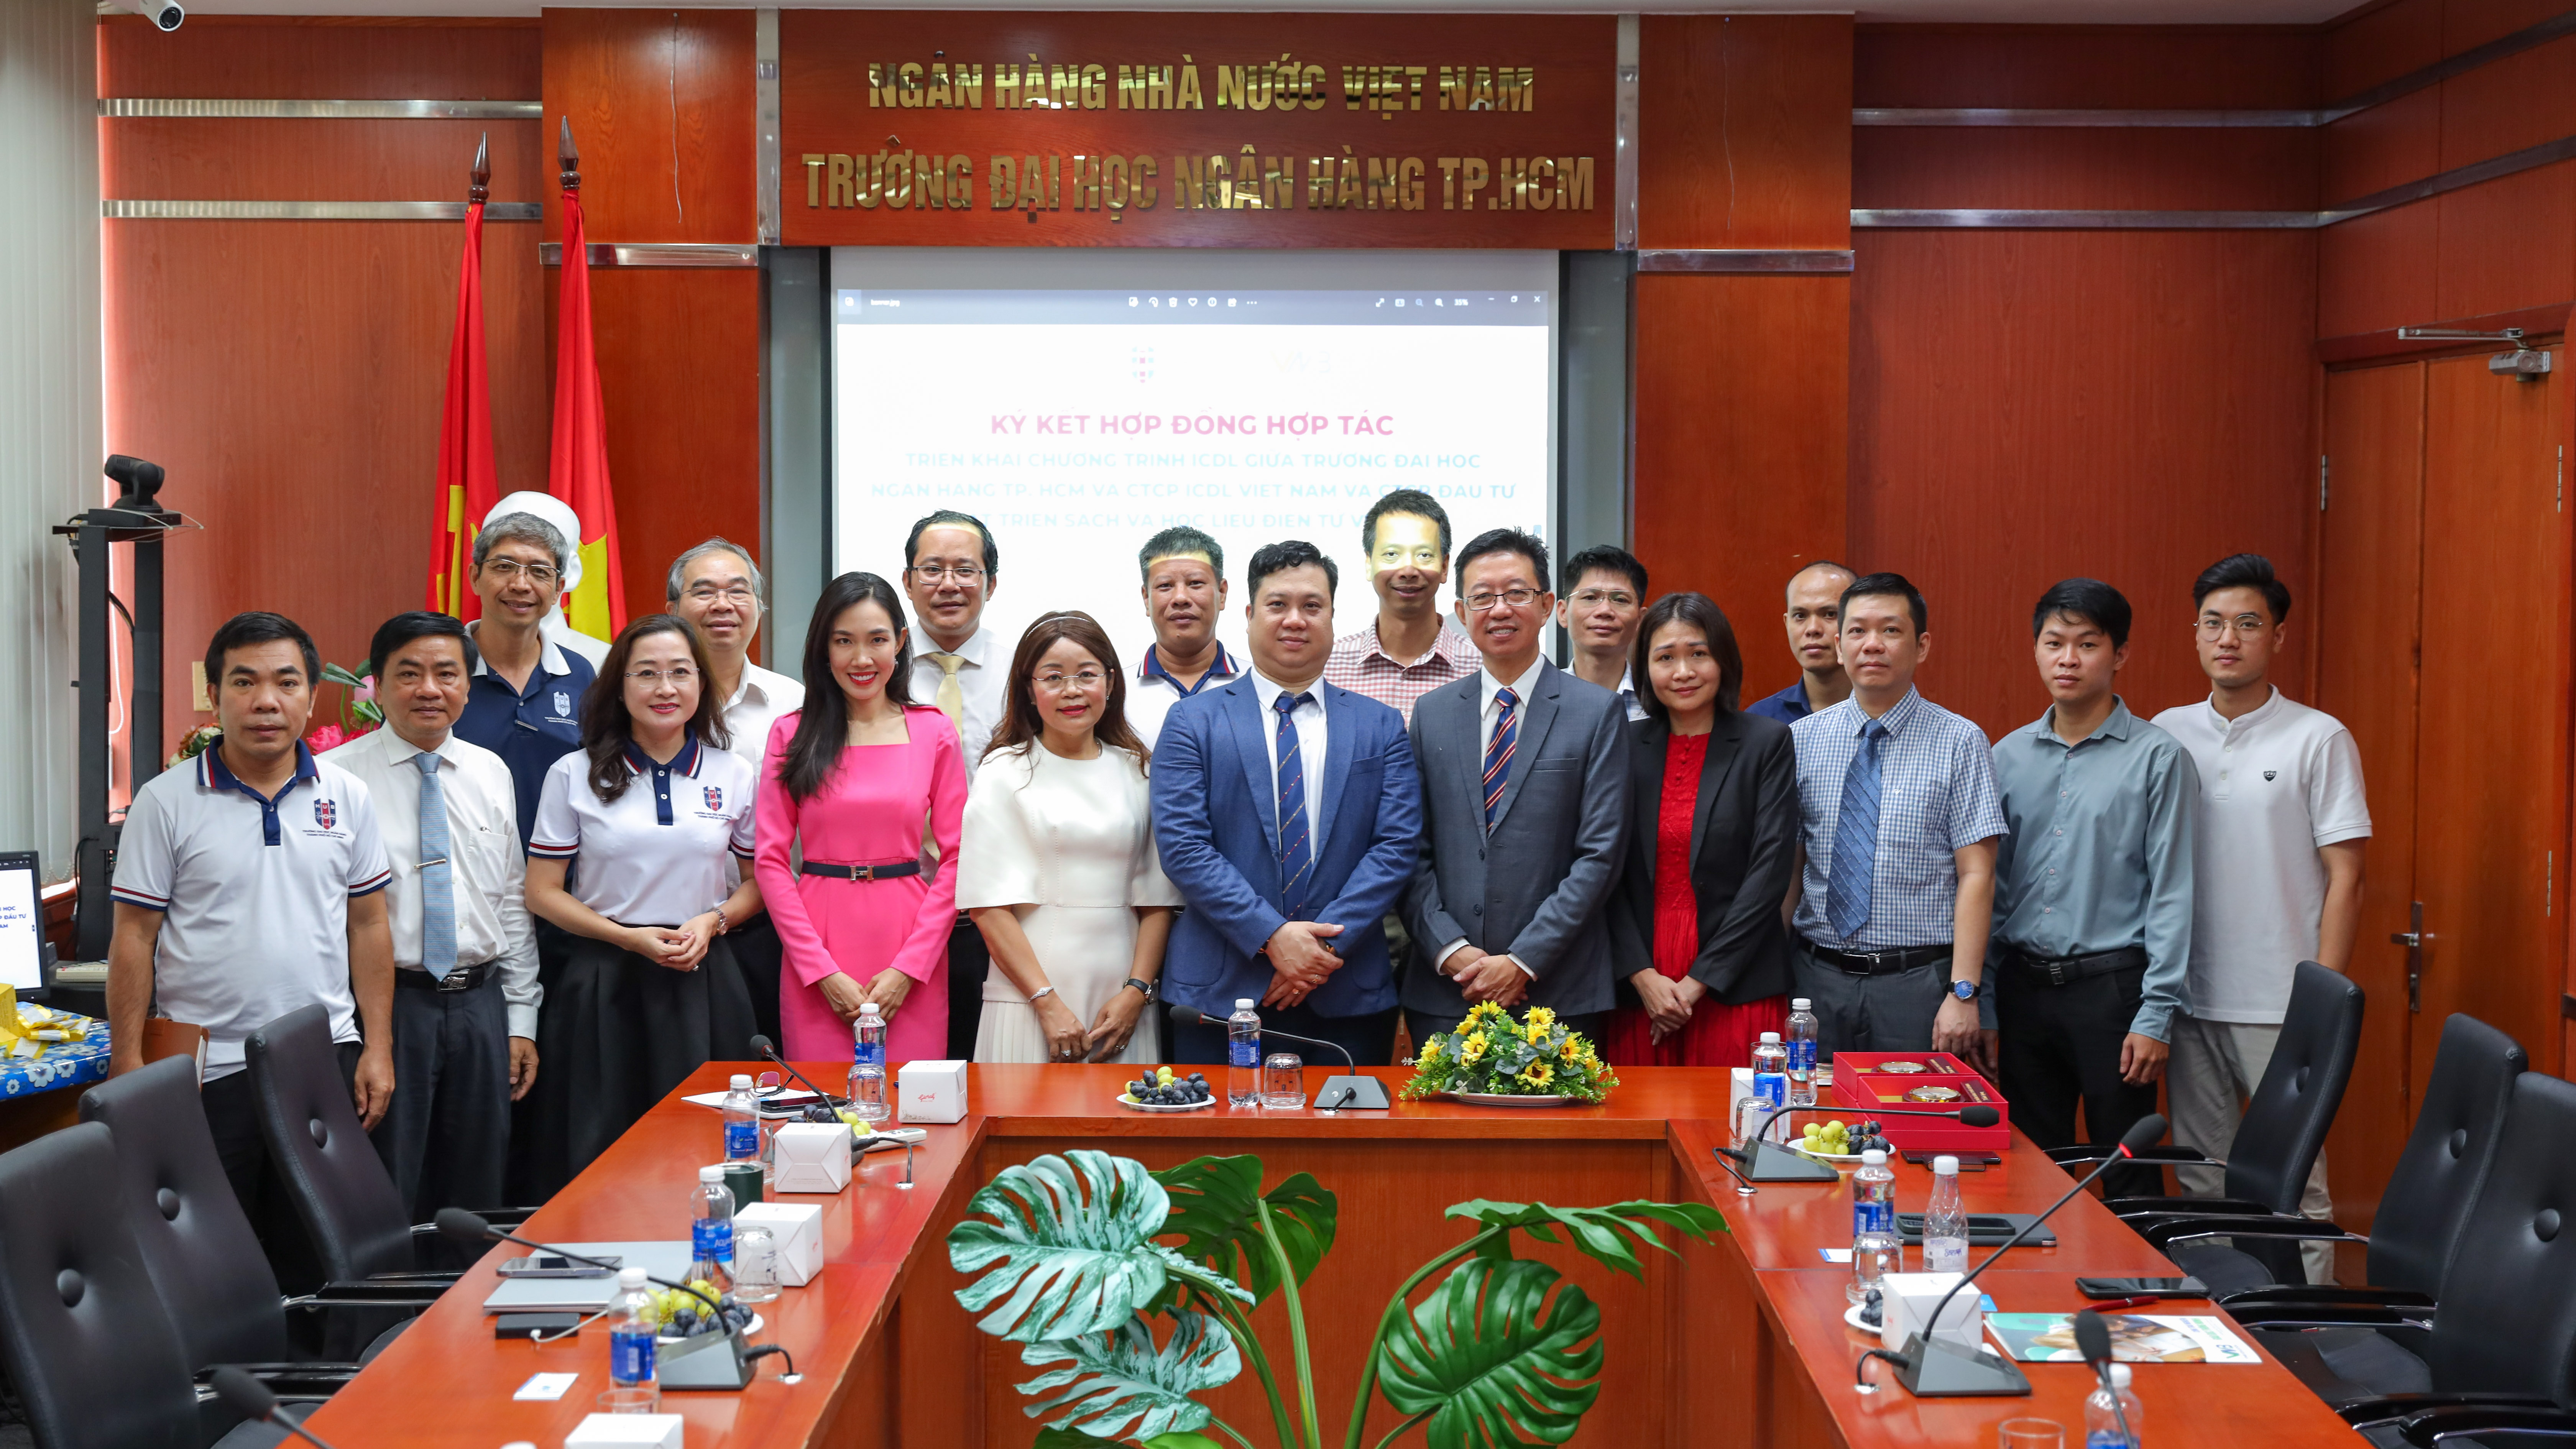 Lễ ký kết hợp đồng hợp tác Trường Đại học Ngân hàng TP Hồ Chí Minh với Công ty Cổ phần ICDL Việt Nam và Công ty Cổ phần Đầu tư Phát triển Sách và Học liệu Điện tử Việt Nam